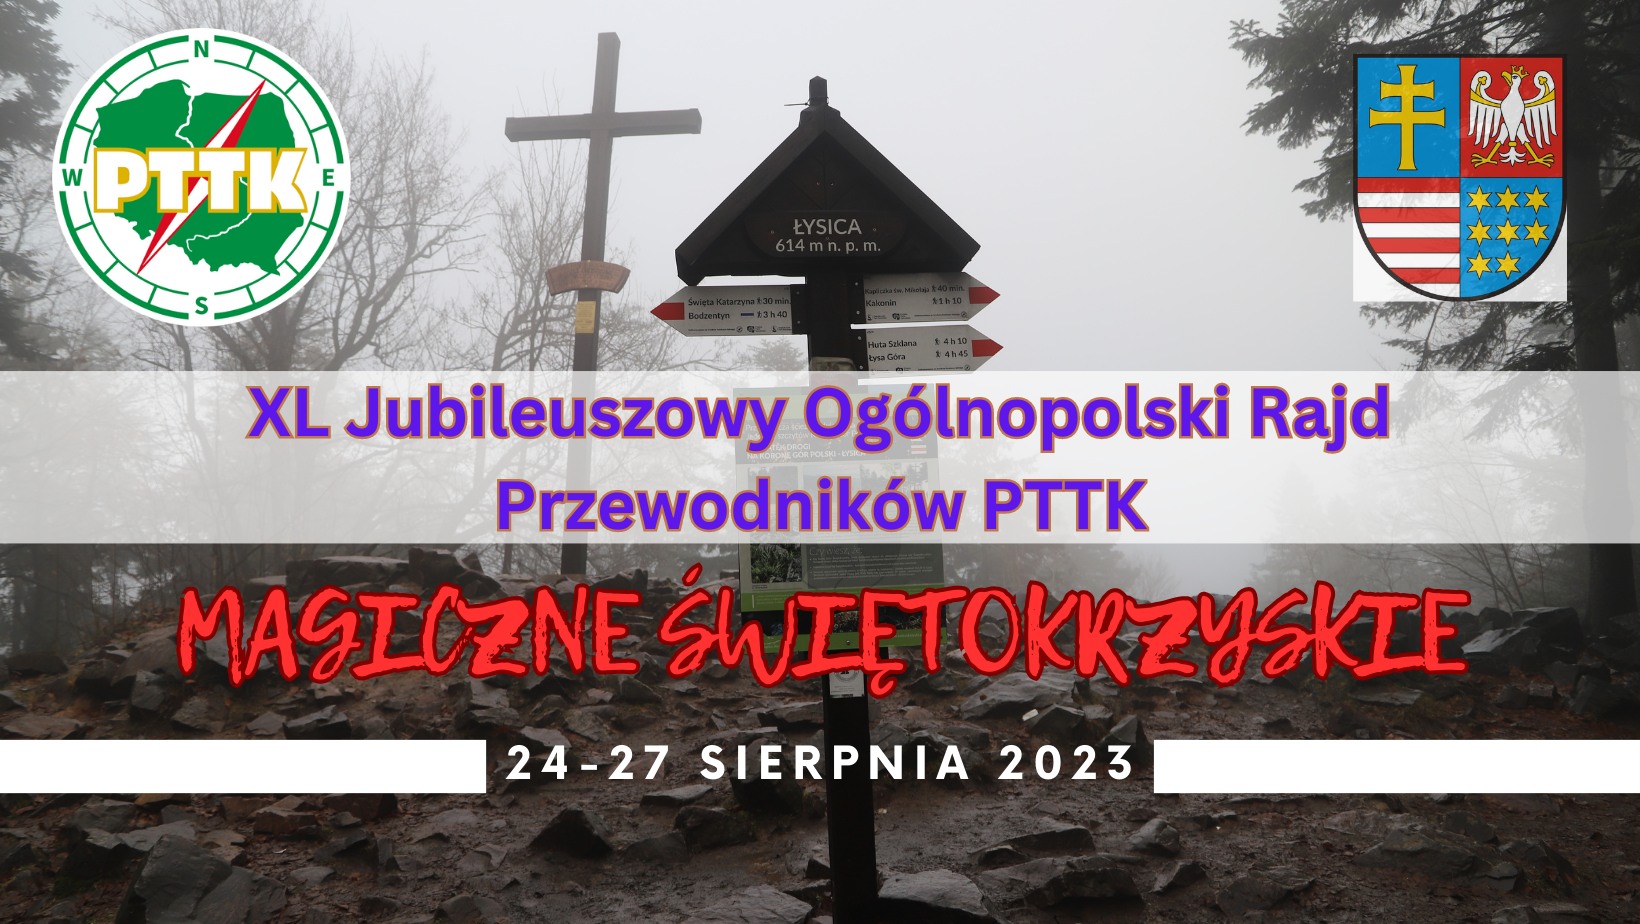 XL Jubileuszowy Ogólnopolski Rajd Górski Przewodników PTTK